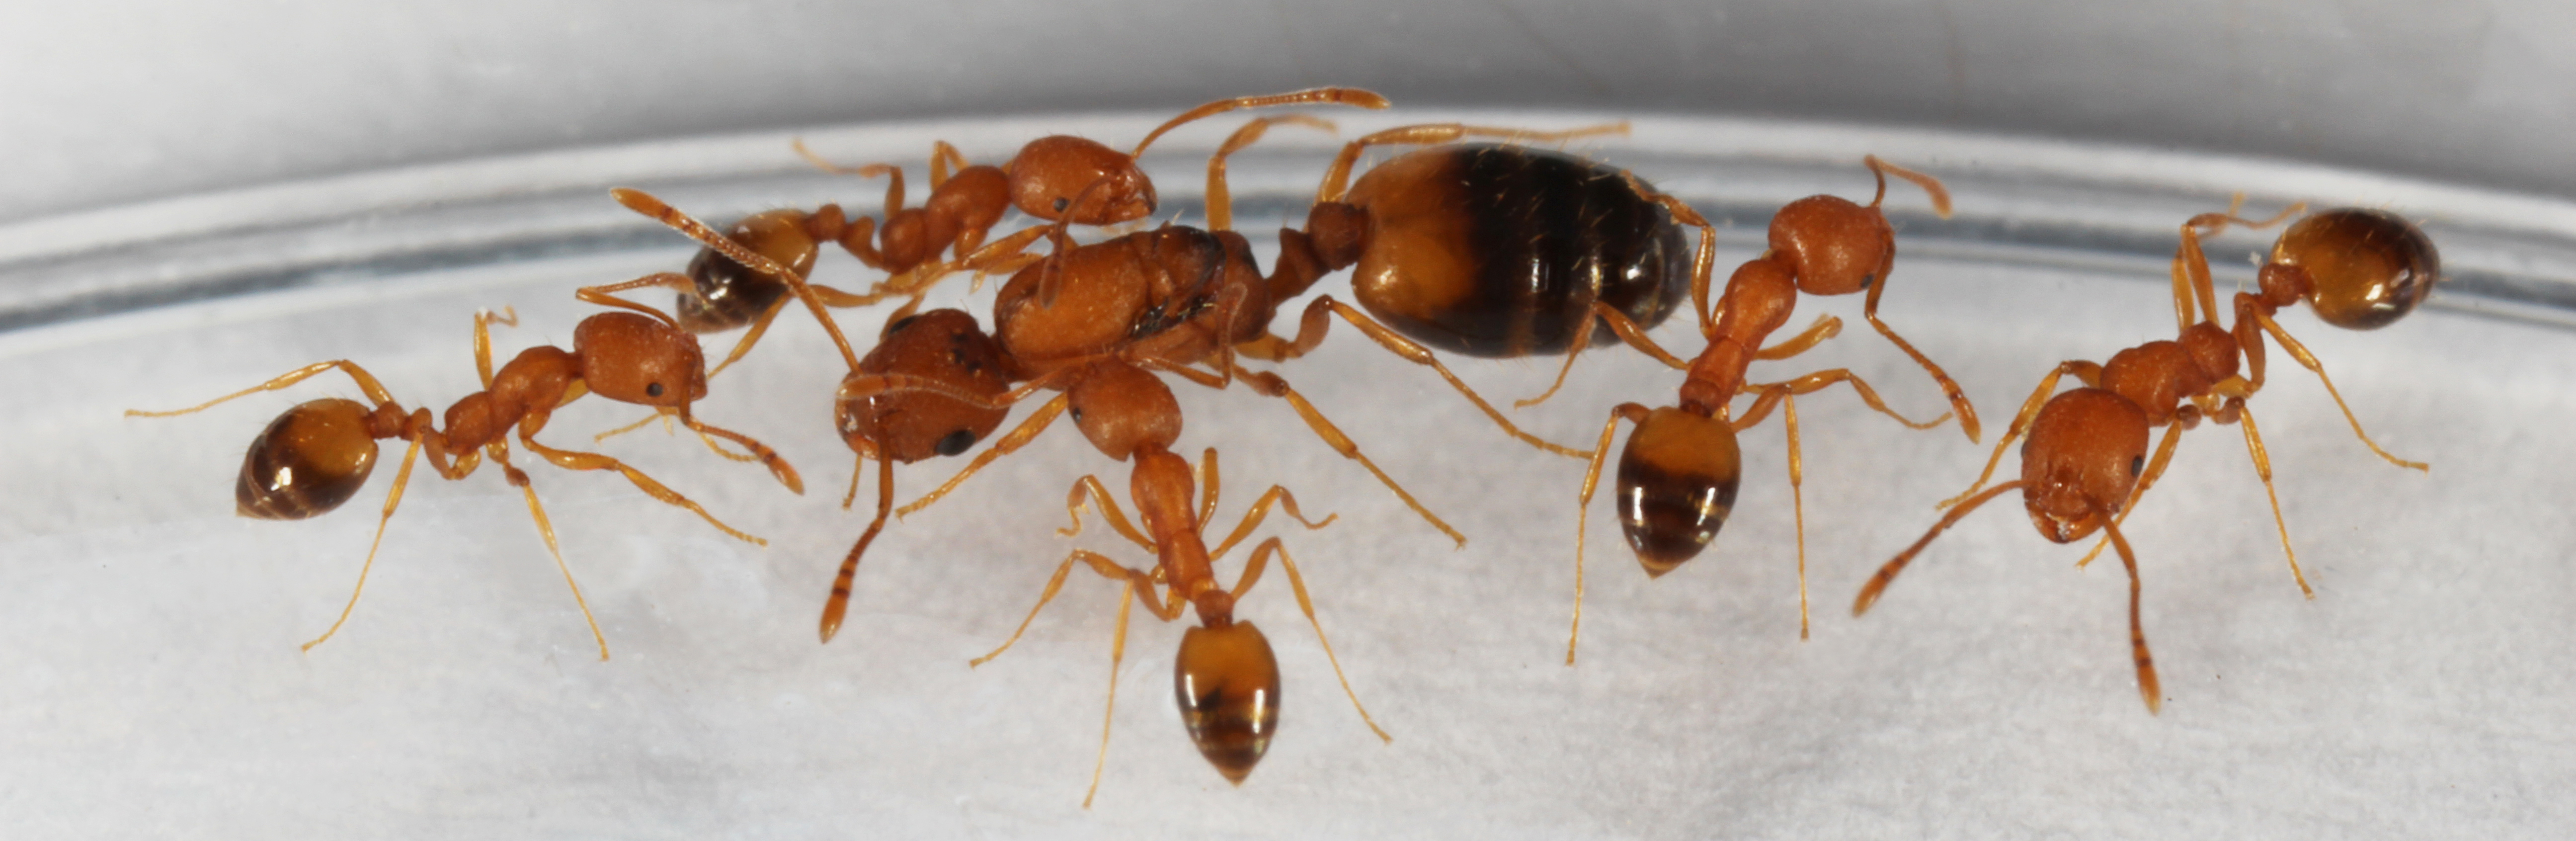 Матка муравья г5ома